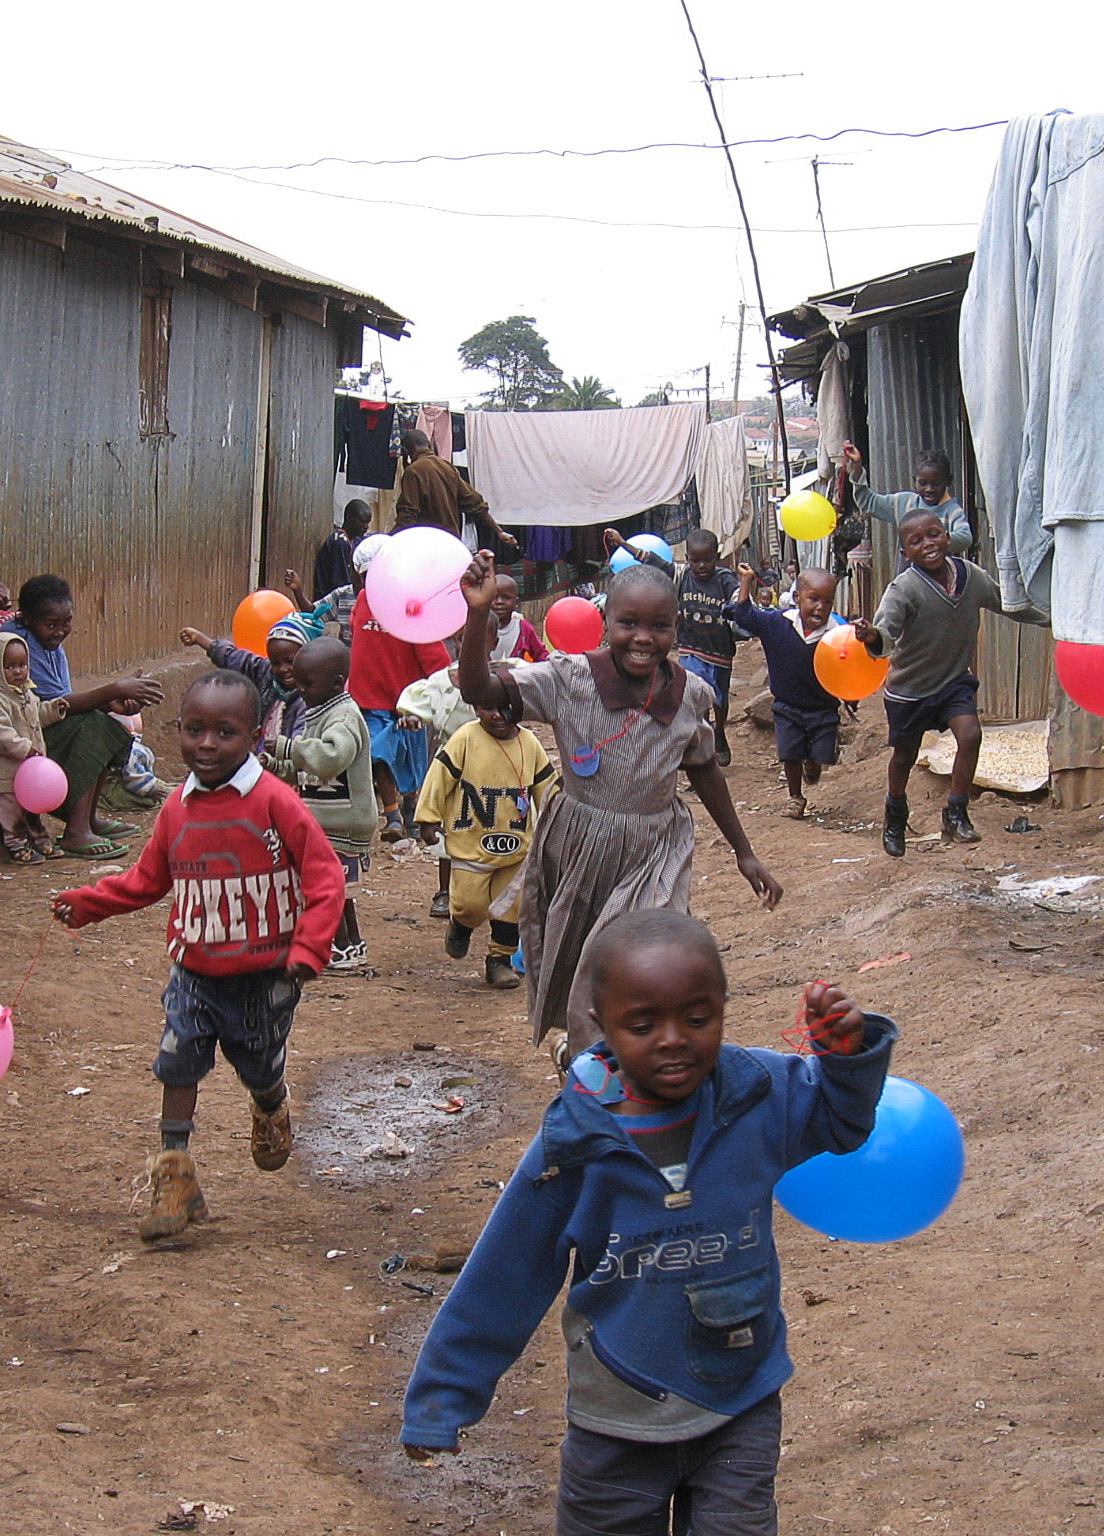 Children running in street